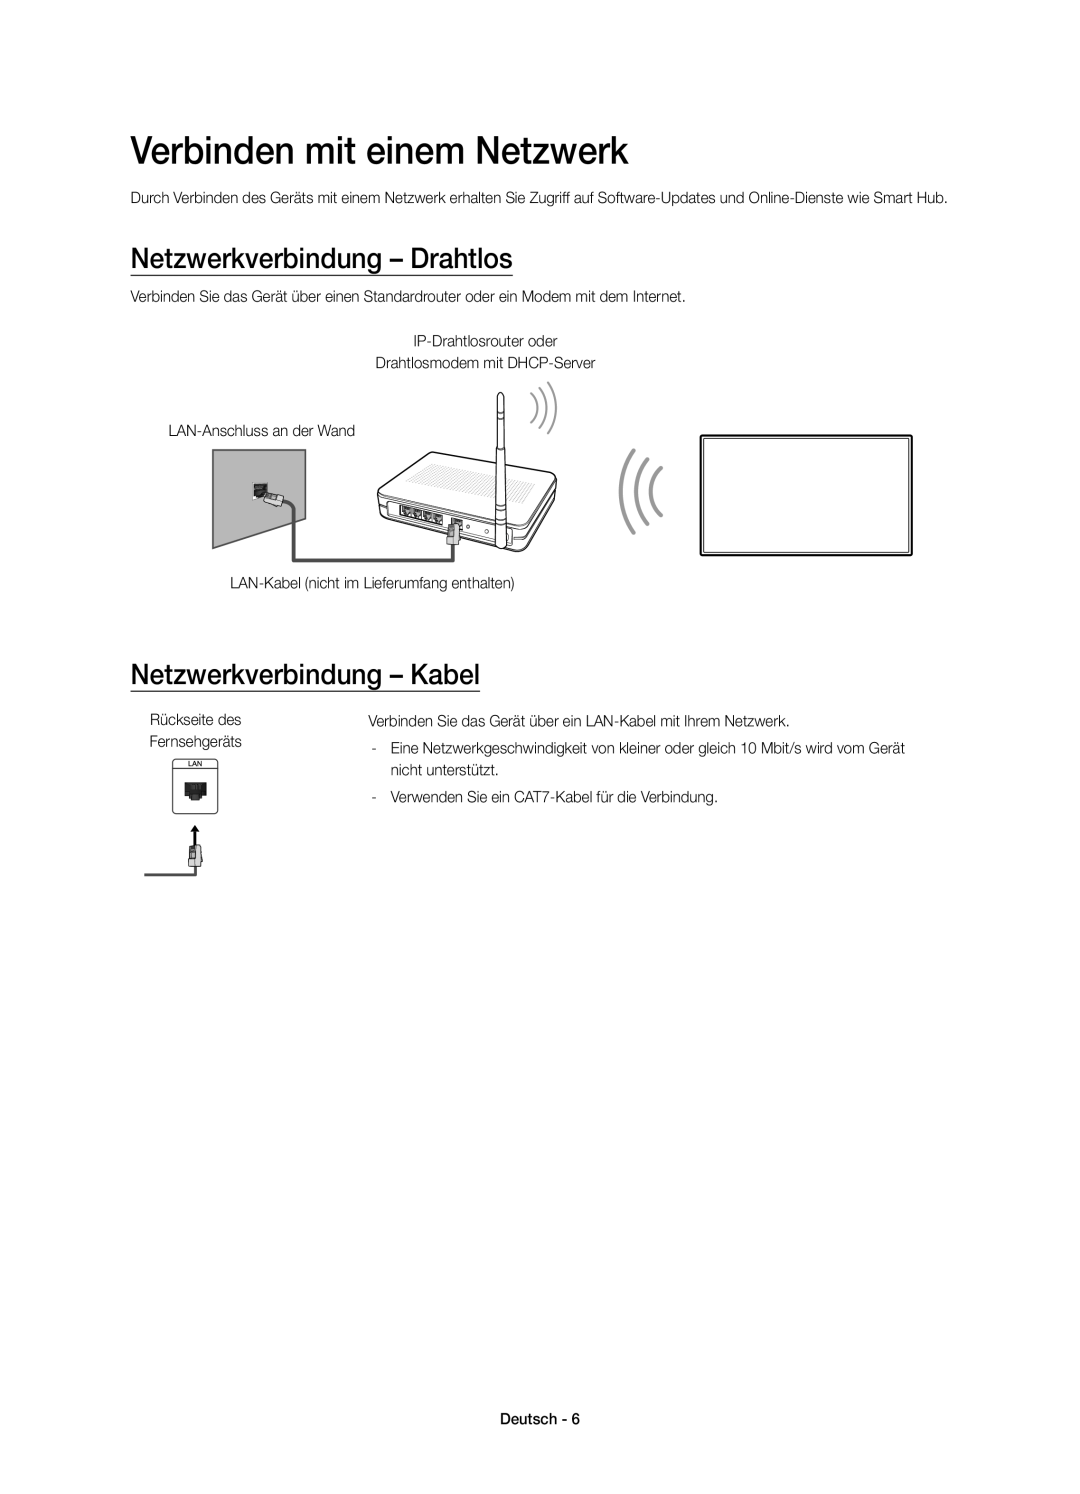 Samsung UE32J5570SUXZG manual Verbinden mit einem Netzwerk, Netzwerkverbindung - Drahtlos, Netzwerkverbindung - Kabel 